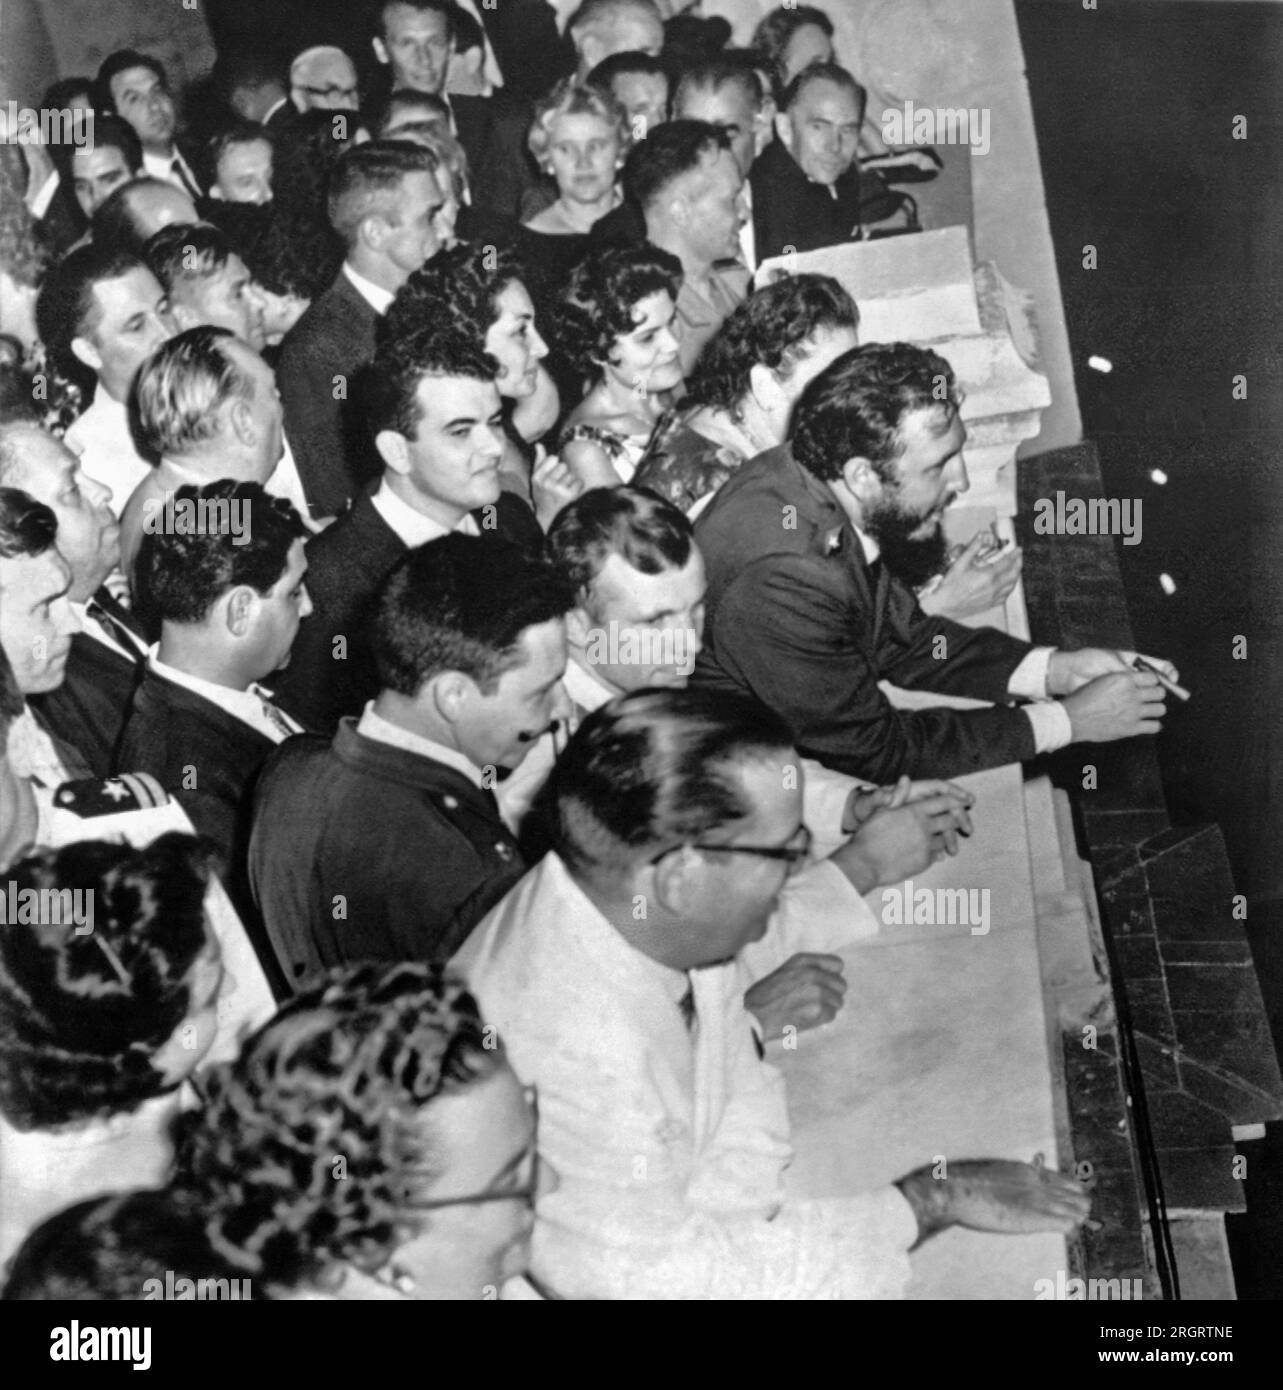 La Havane, Cuba : 26 juillet 1961 le Premier ministre cubain Fidel Castro s'appuie sur le palais présidentiel en balocony lors d'une célébration pour le cosmonaute russe Youri Gagarine. Gagarine se tient juste derrière Castro, et le président Osvaldo Dortieos est au premier plan avec des lunettes et un costume blanc. Banque D'Images